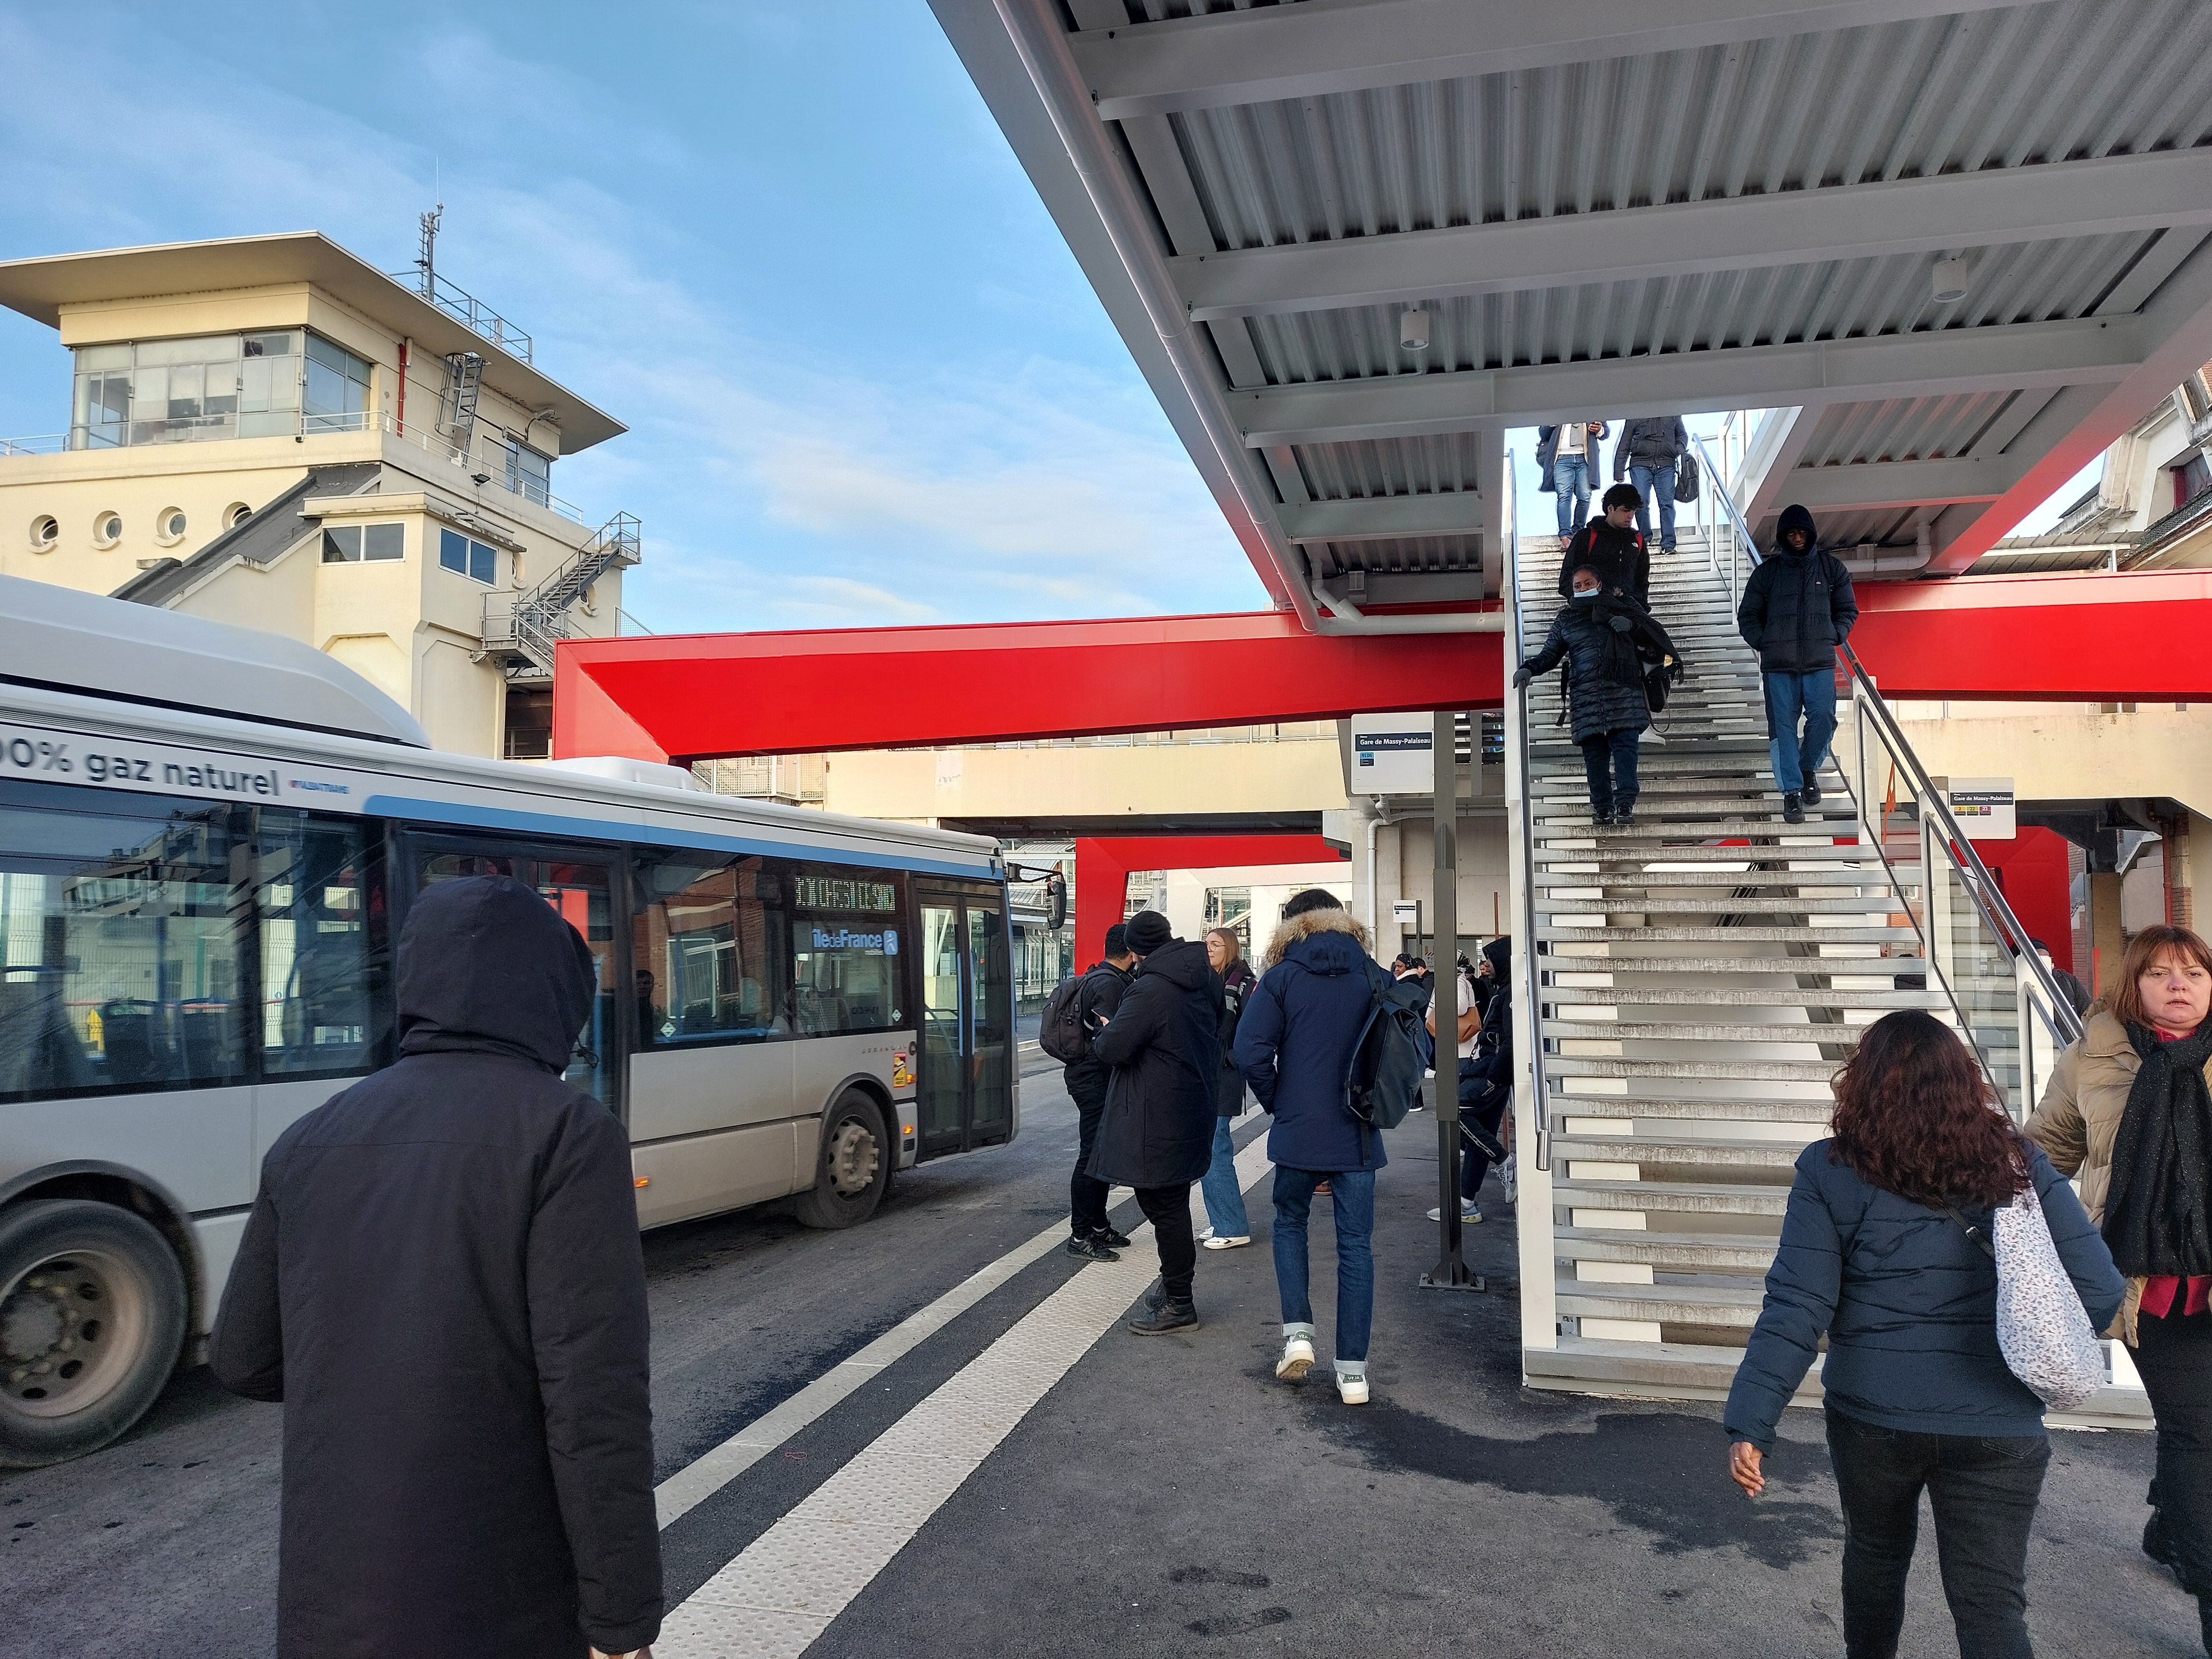 Massy, le 10 janvier. La gare routière de Massy-Palaiseau est réaménagée pour permettre une sécurisation et un accès facilité aux 20 lignes de bus affrétées. Mais les travaux sont suspendus en raison d'un surcoût. LP/Cécile Chevallier